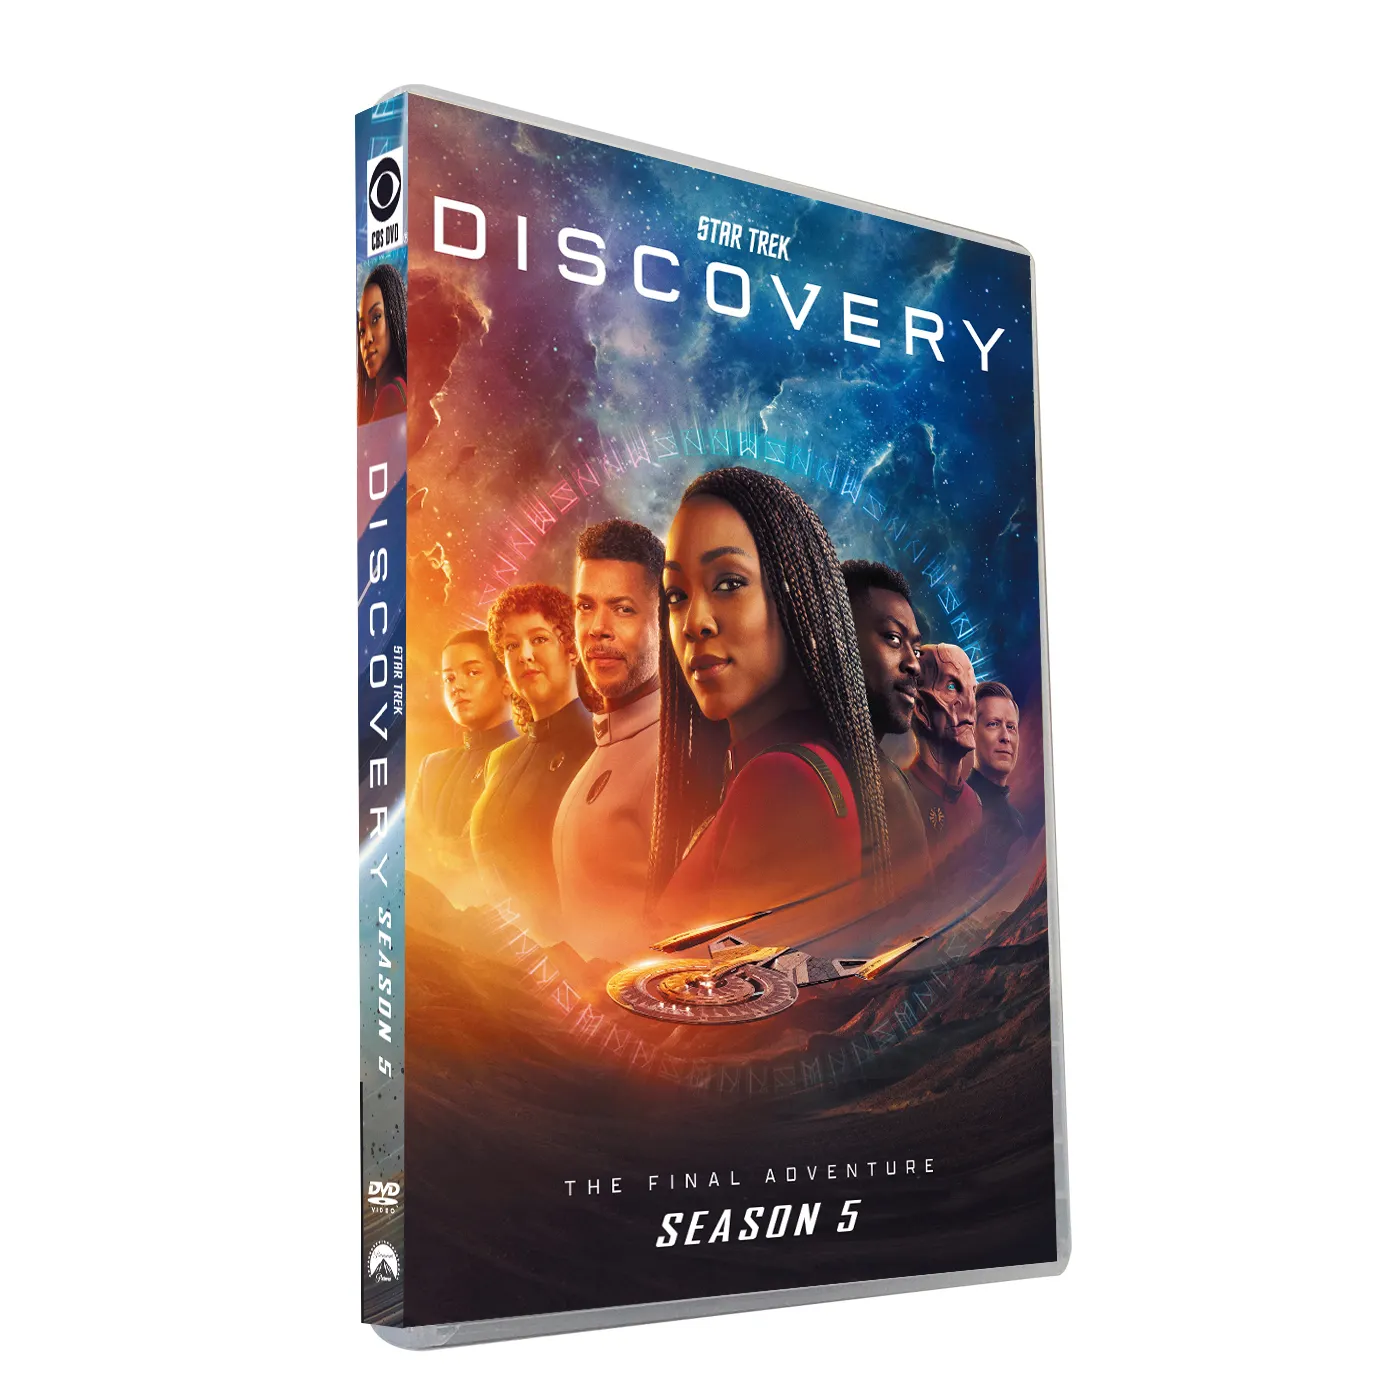 Star Trek Discovery Season 5, новейшие DVD фильмы с 3 дисками, оптовая продажа, лидер продаж, DVD-фильмы, Телесериалы, бокс-сет, CD-мультфильм, бесплатная доставка